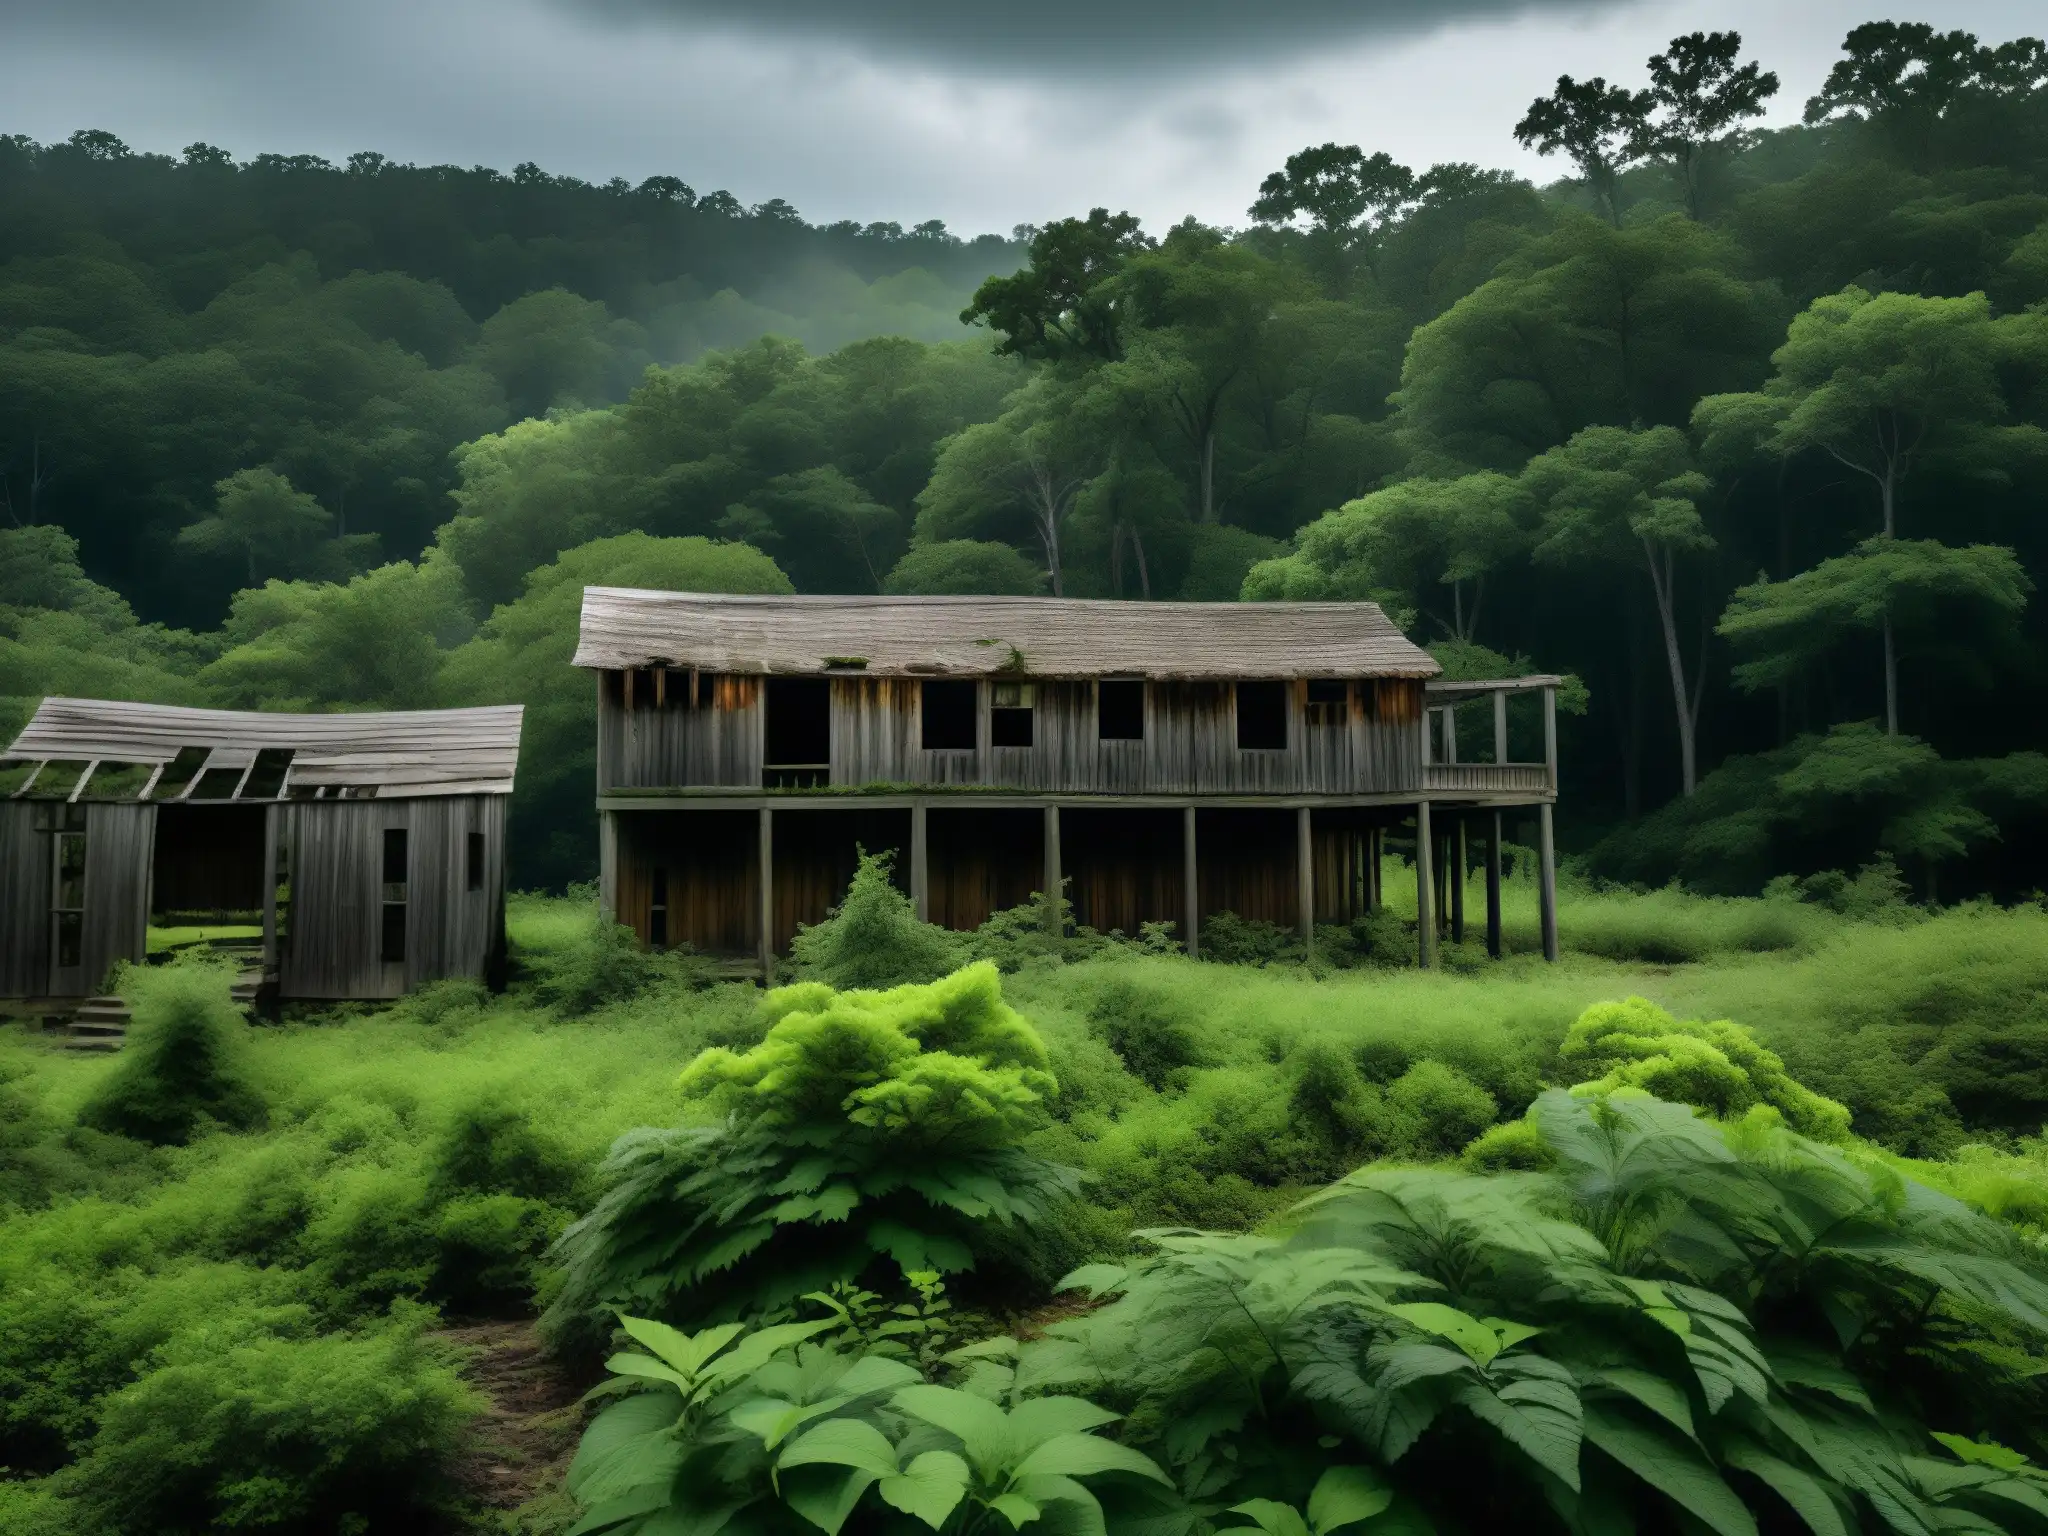 Misterio de la desaparición de la colonia Roanoke: ruinas abandonadas y cubiertas de vegetación bajo un cielo nublado y sombrío